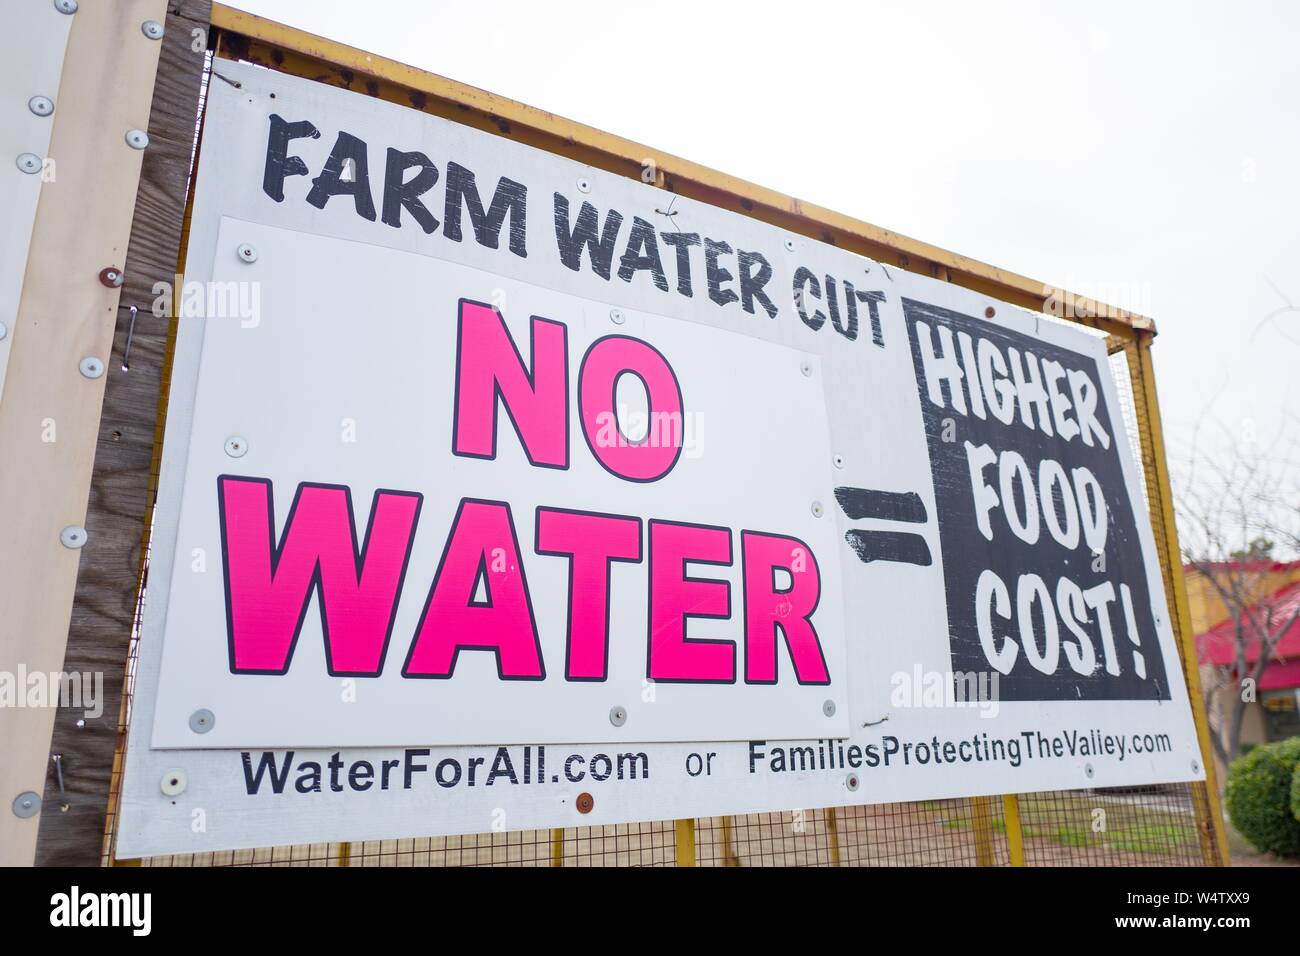 Zeichen für das San Joaquin Valley in Kalifornien protestieren Wasser politik, mit Text lesen Farm Wasser geschnitten, kein Wasser ist gleich Höhere Essen kosten, entlang der Autobahn 5 Freeway, durch politische Gruppe Familien schützen das Tal, 9. Dezember 2018 erstellt. () Stockfoto